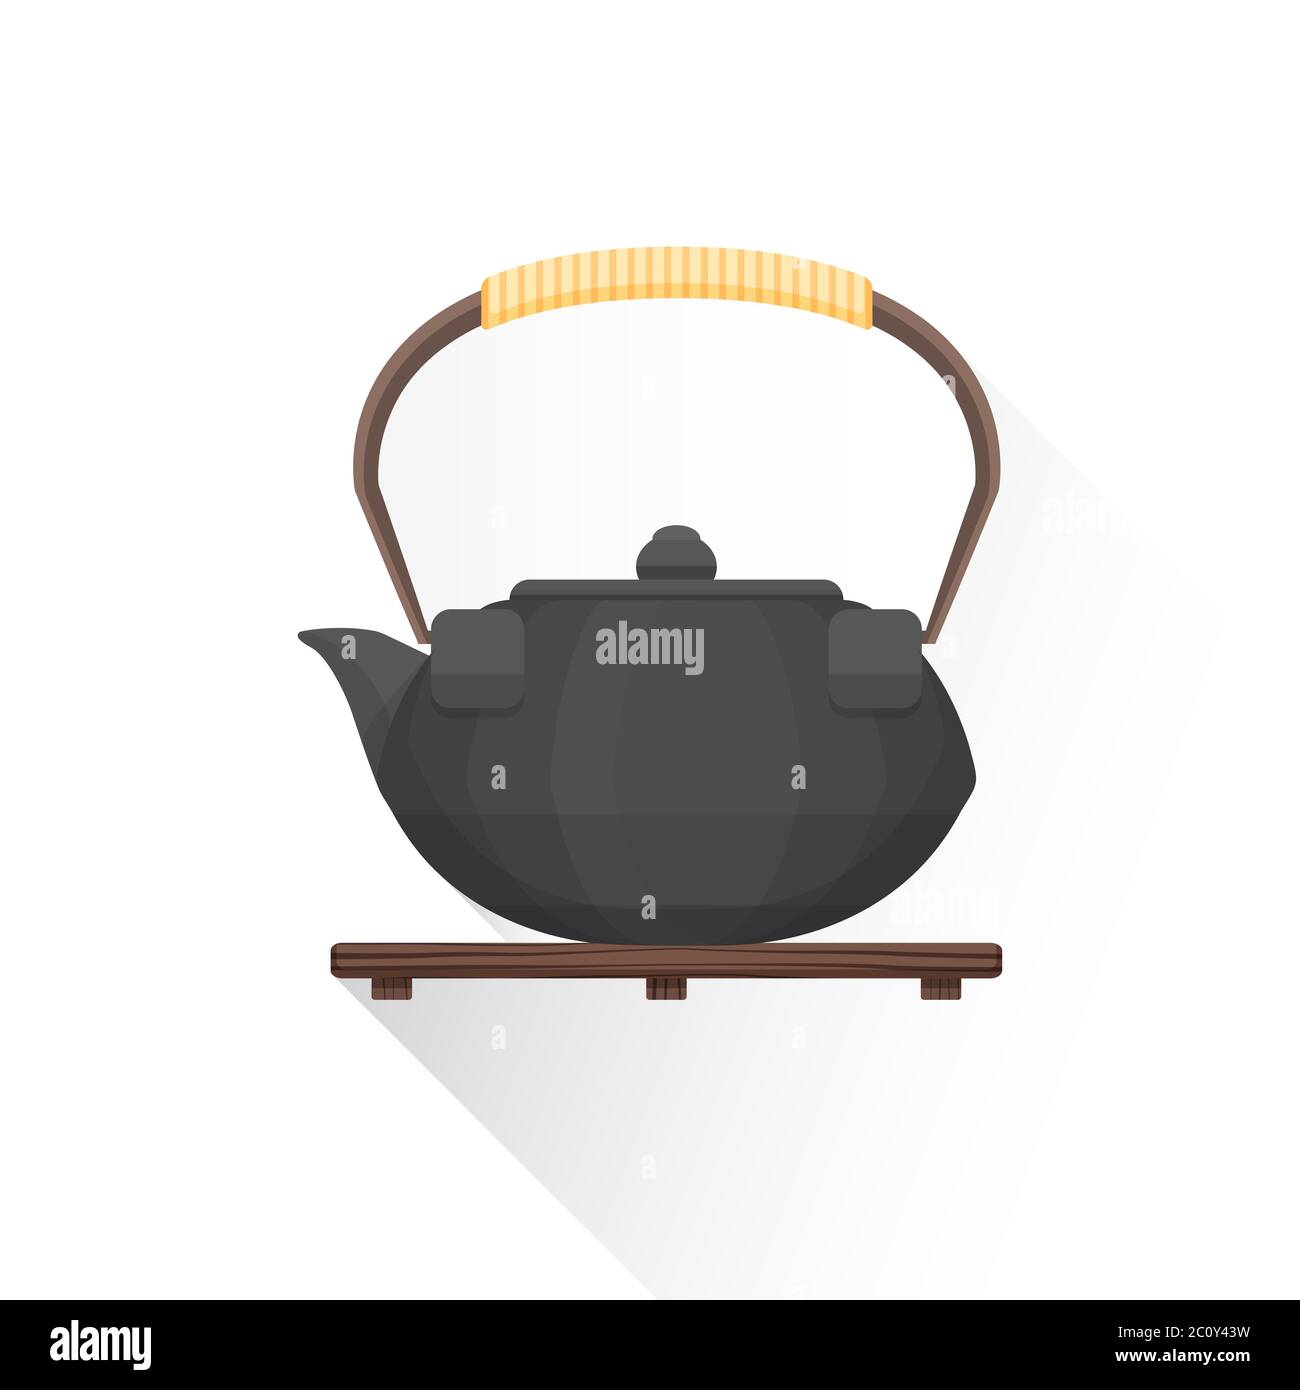 https://c8.alamy.com/comp/2C0Y43W/flat-asian-tea-iron-kettle-illustration-icon-2C0Y43W.jpg